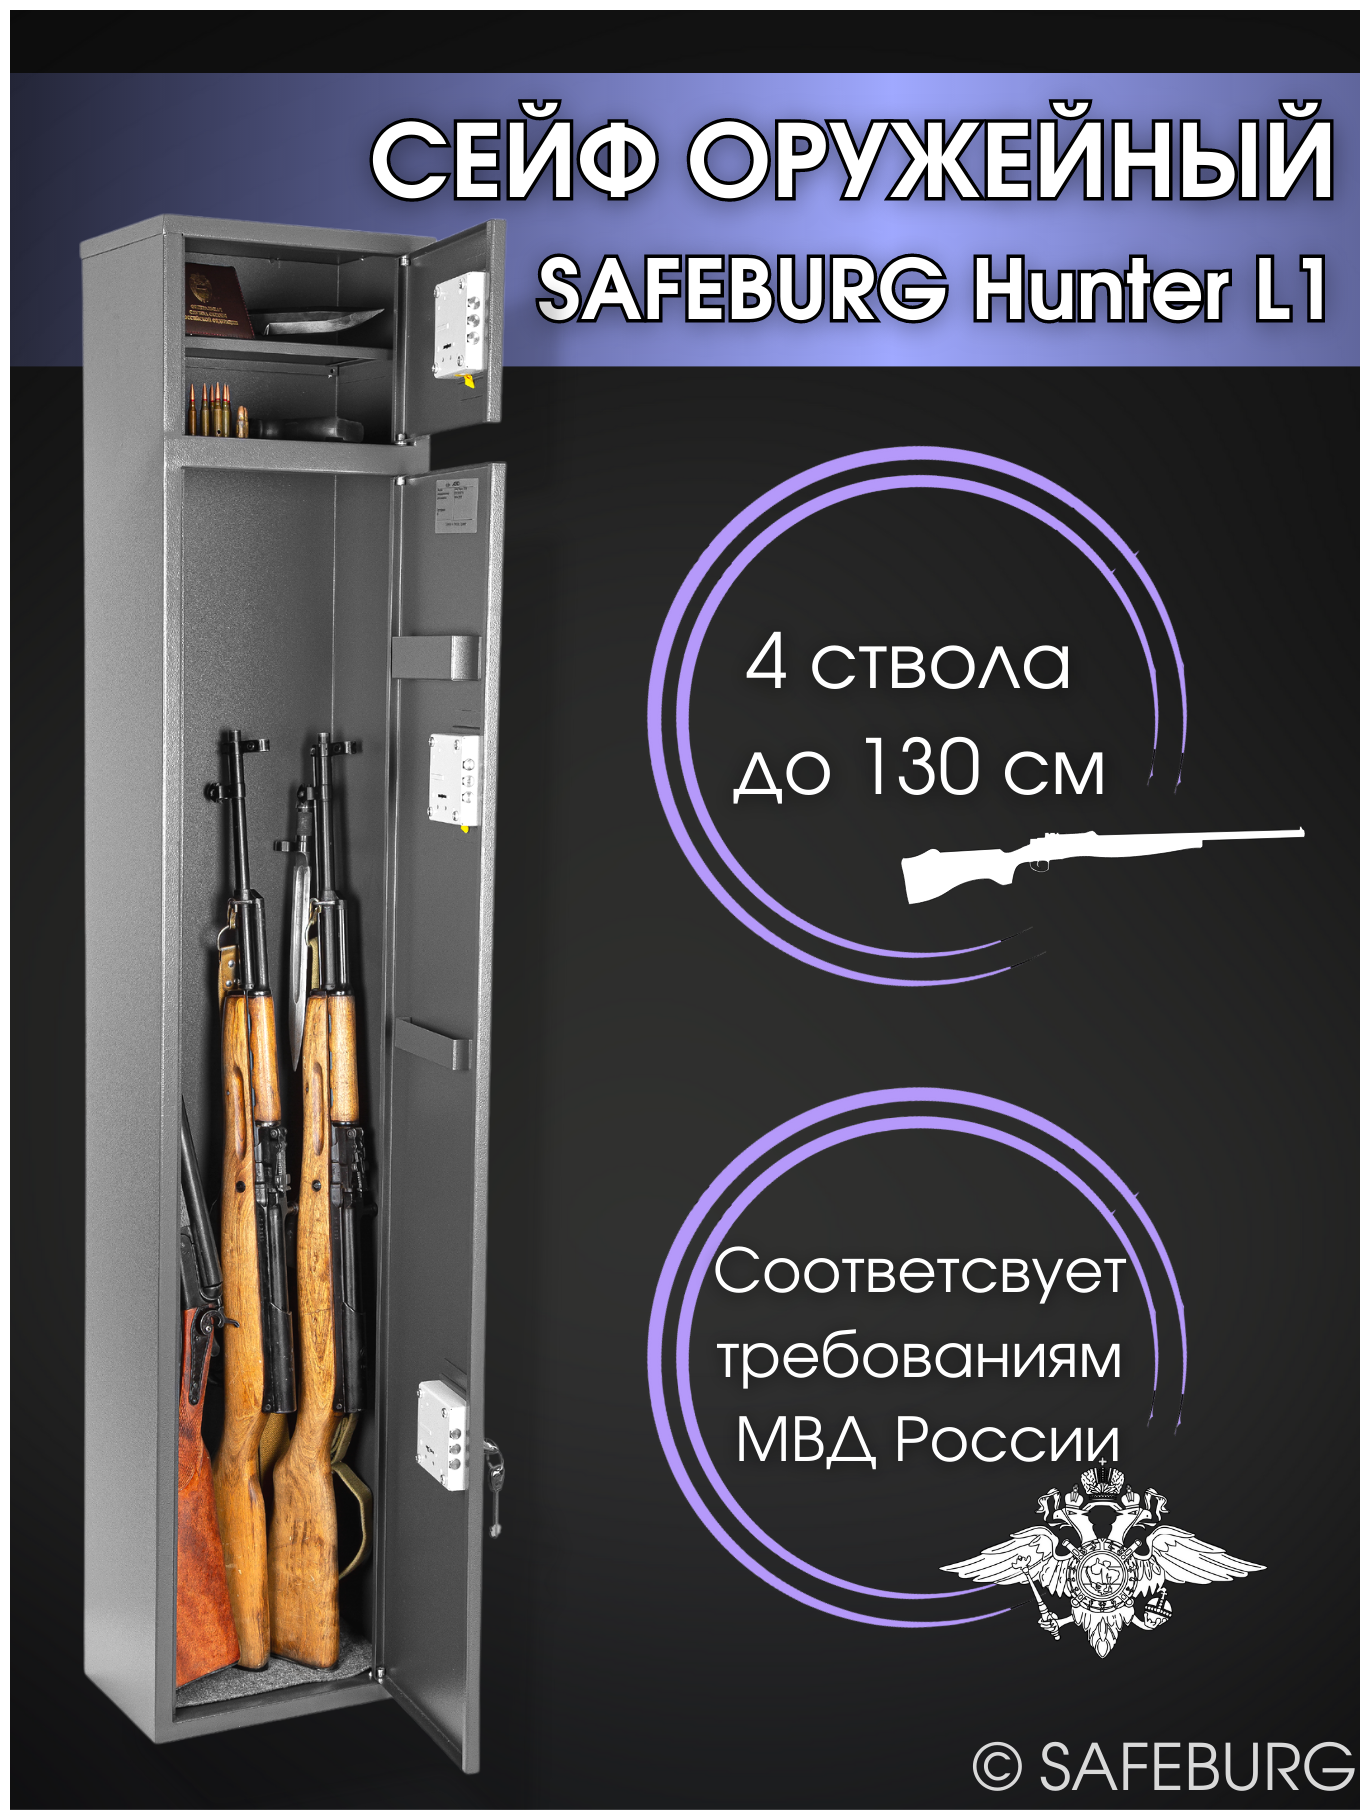 Сейф оружейный SAFEBURG Hunter L1 на 4 ствола до 130 см ключевой замок 153x30x20 см). Соответствует требованиям МВД России